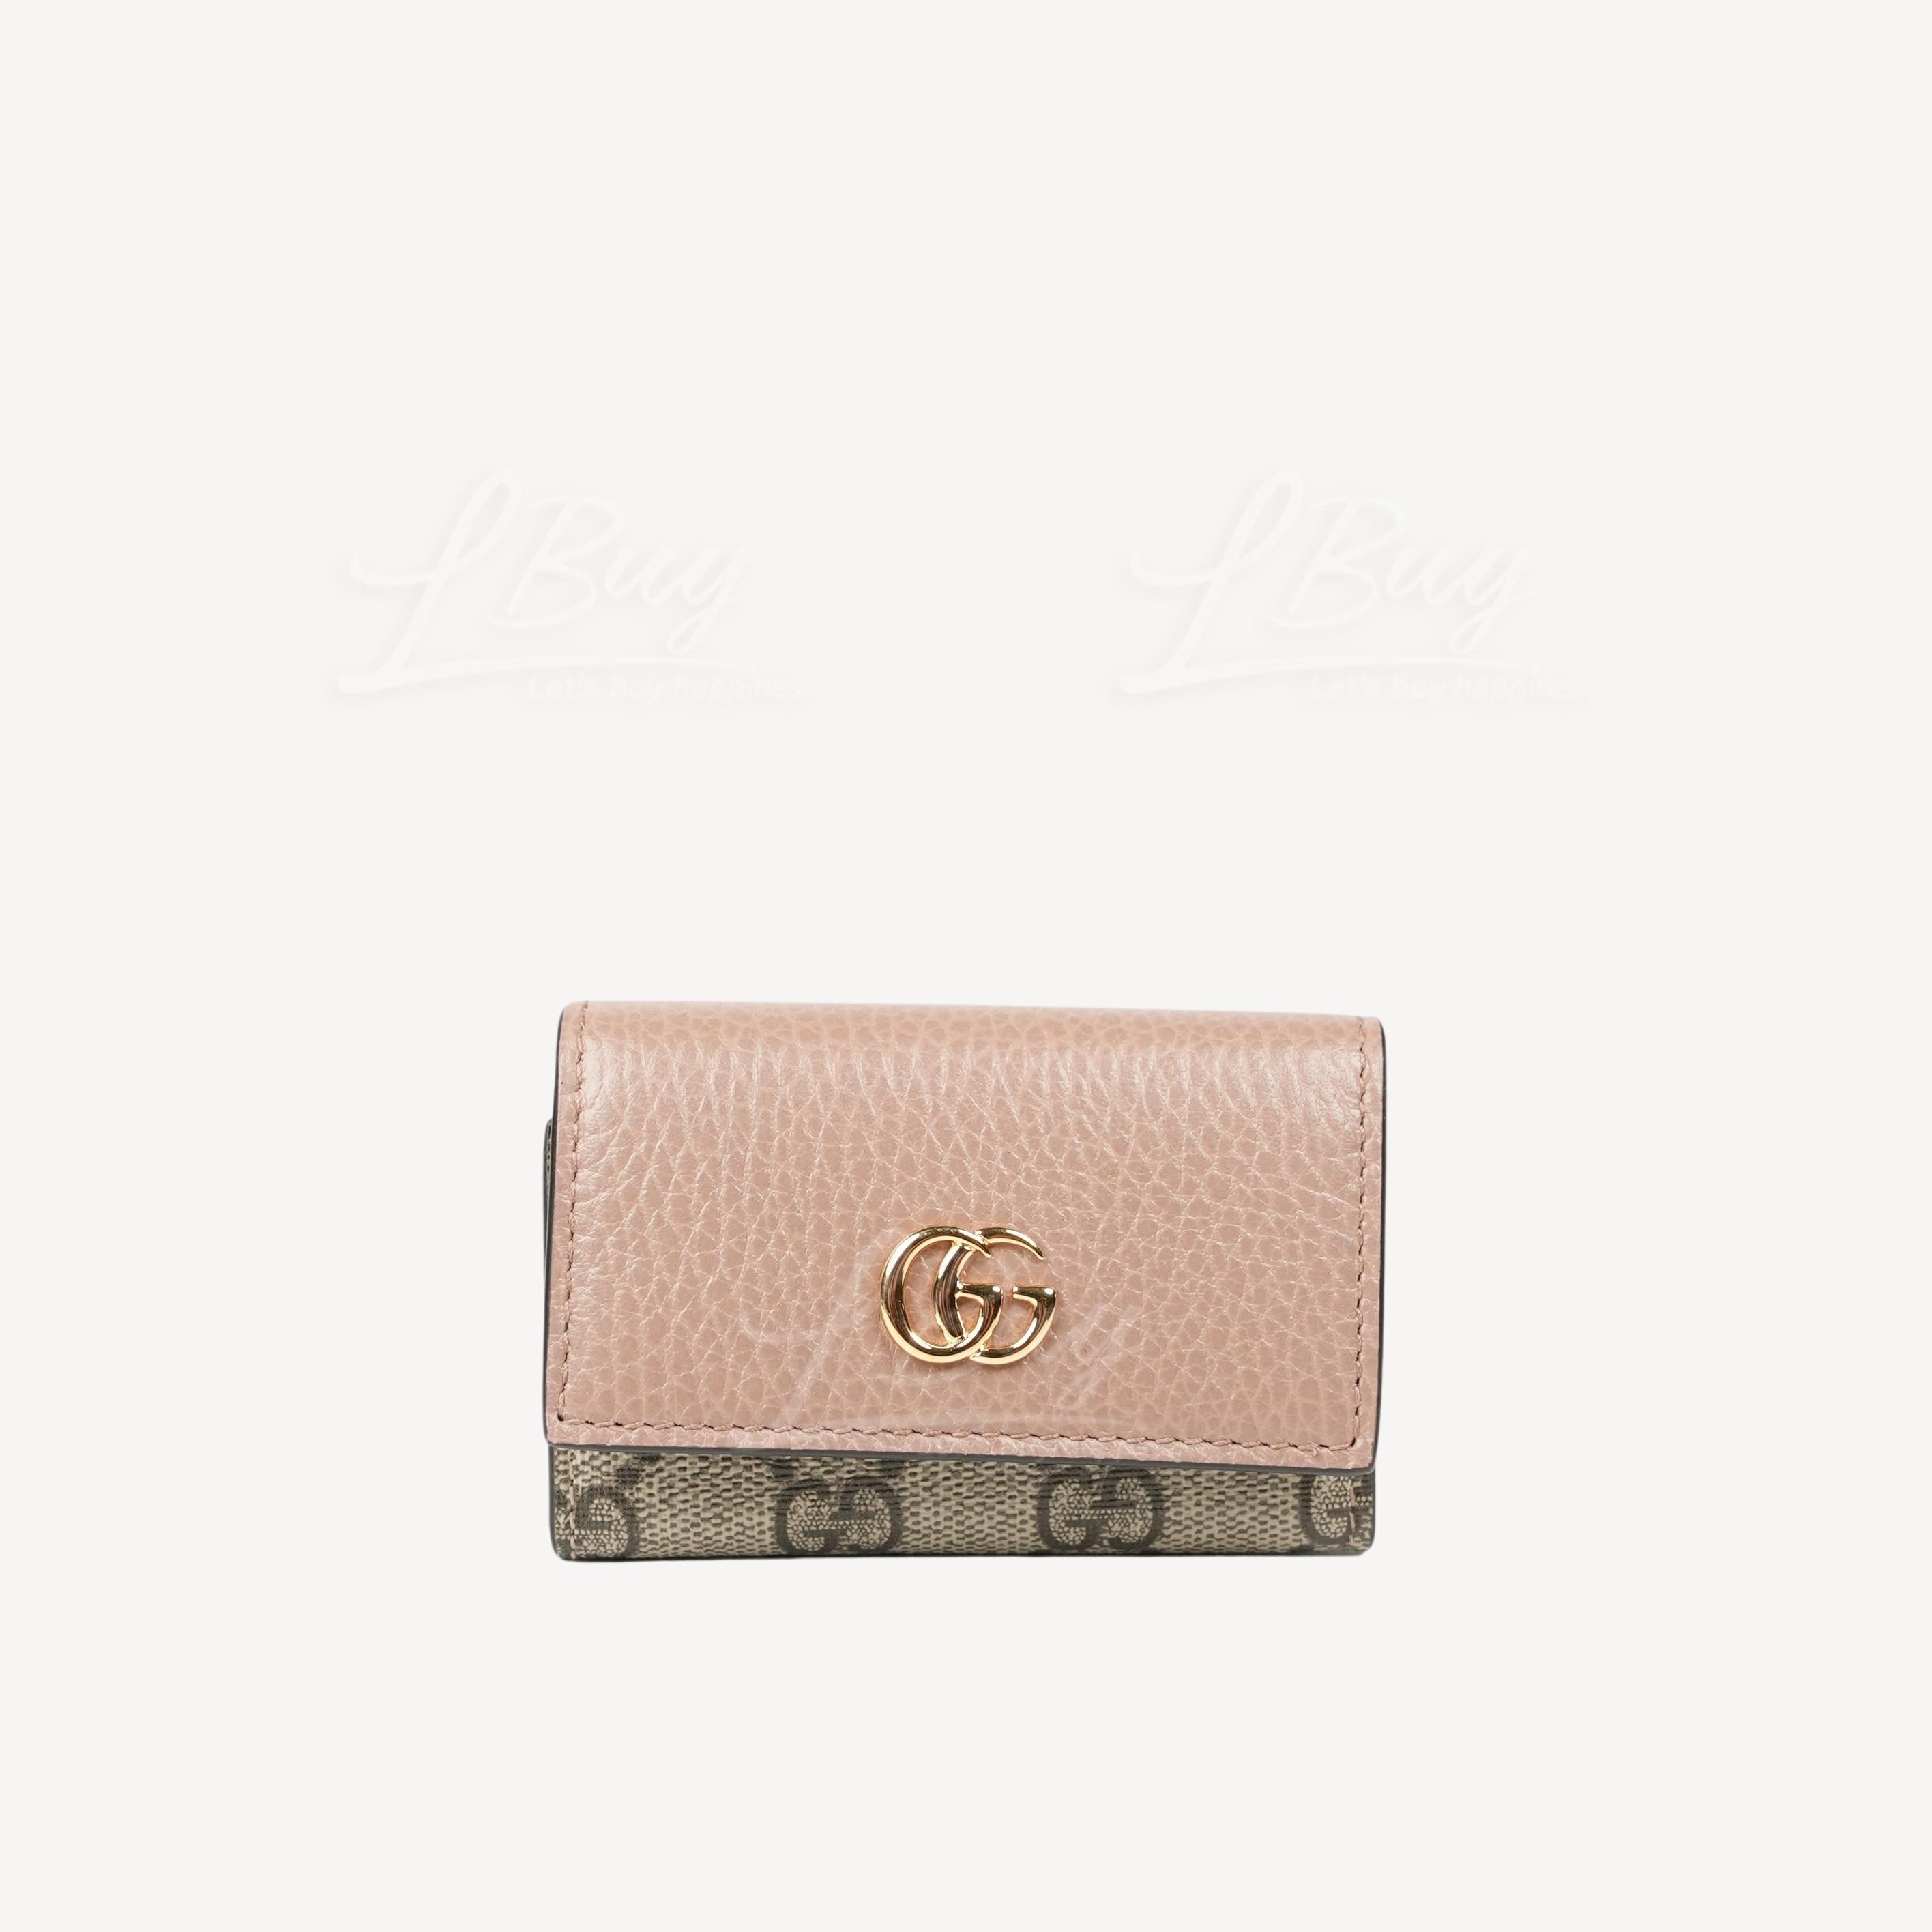 Gucci GG Logo MARMONT皮革钥匙包 灰粉色 456118